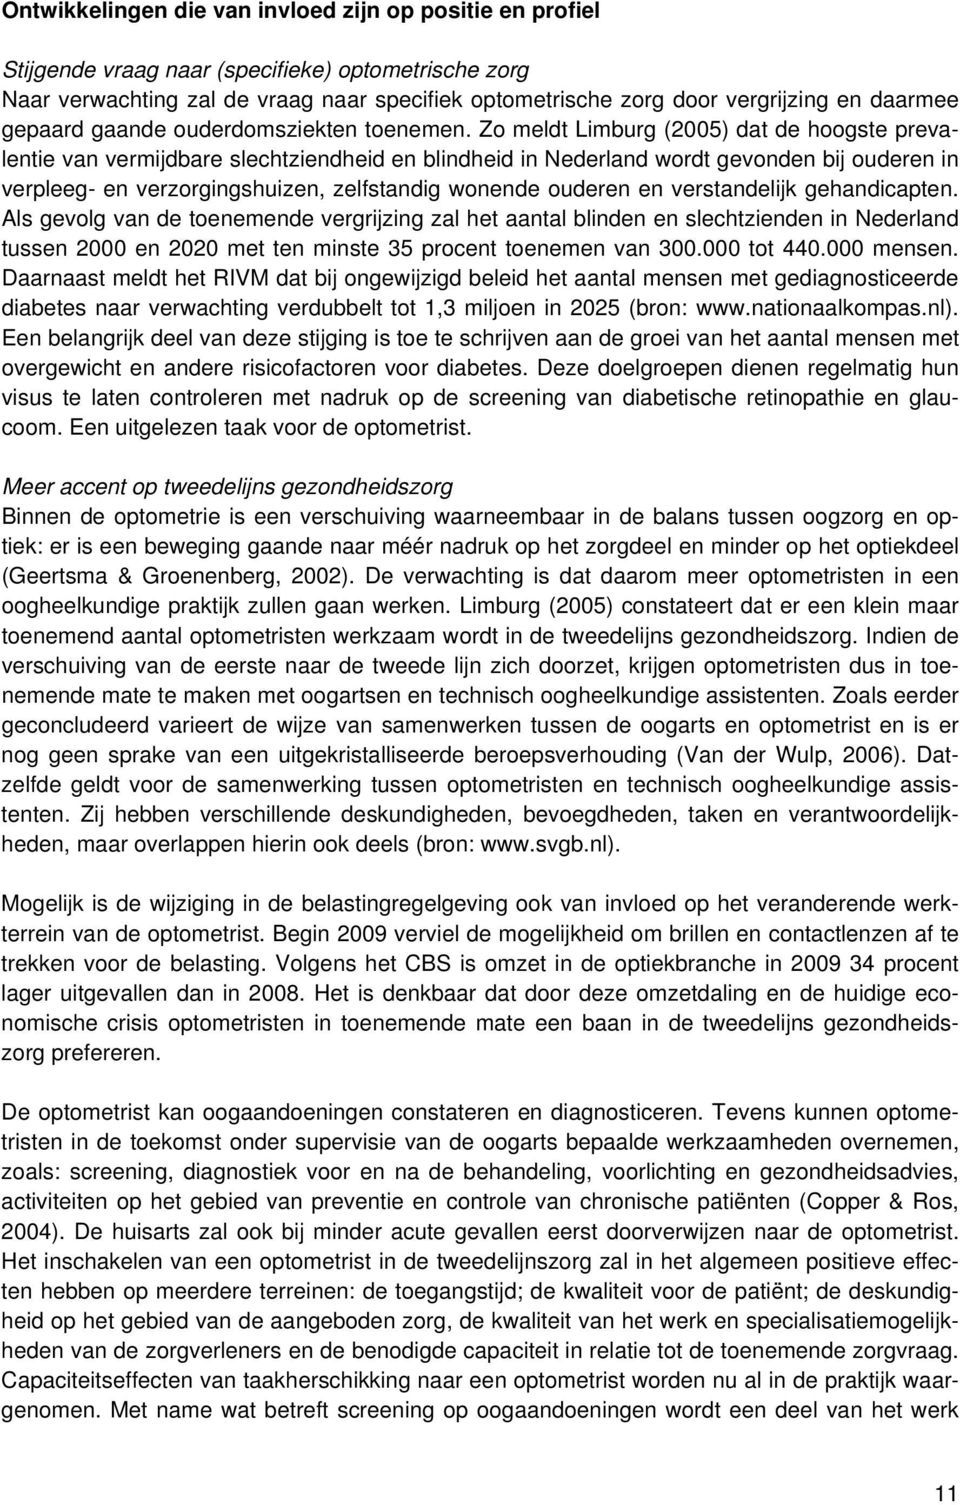 Zo meldt Limburg (2005) dat de hoogste prevalentie van vermijdbare slechtziendheid en blindheid in Nederland wordt gevonden bij ouderen in verpleeg- en verzorgingshuizen, zelfstandig wonende ouderen